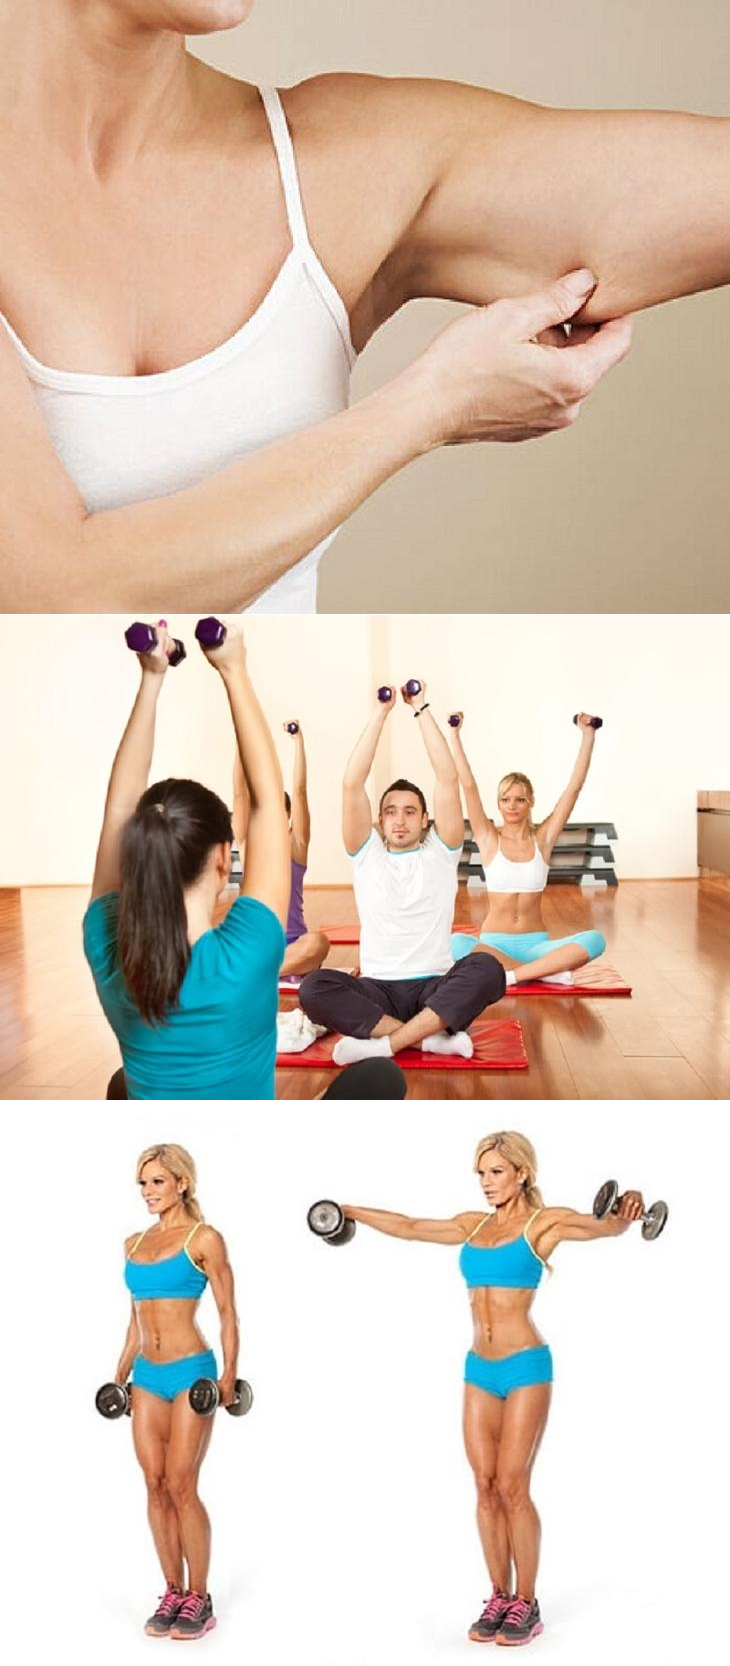 Как похудеть в руках и плечах: эффективные упражнения, питание, массаж